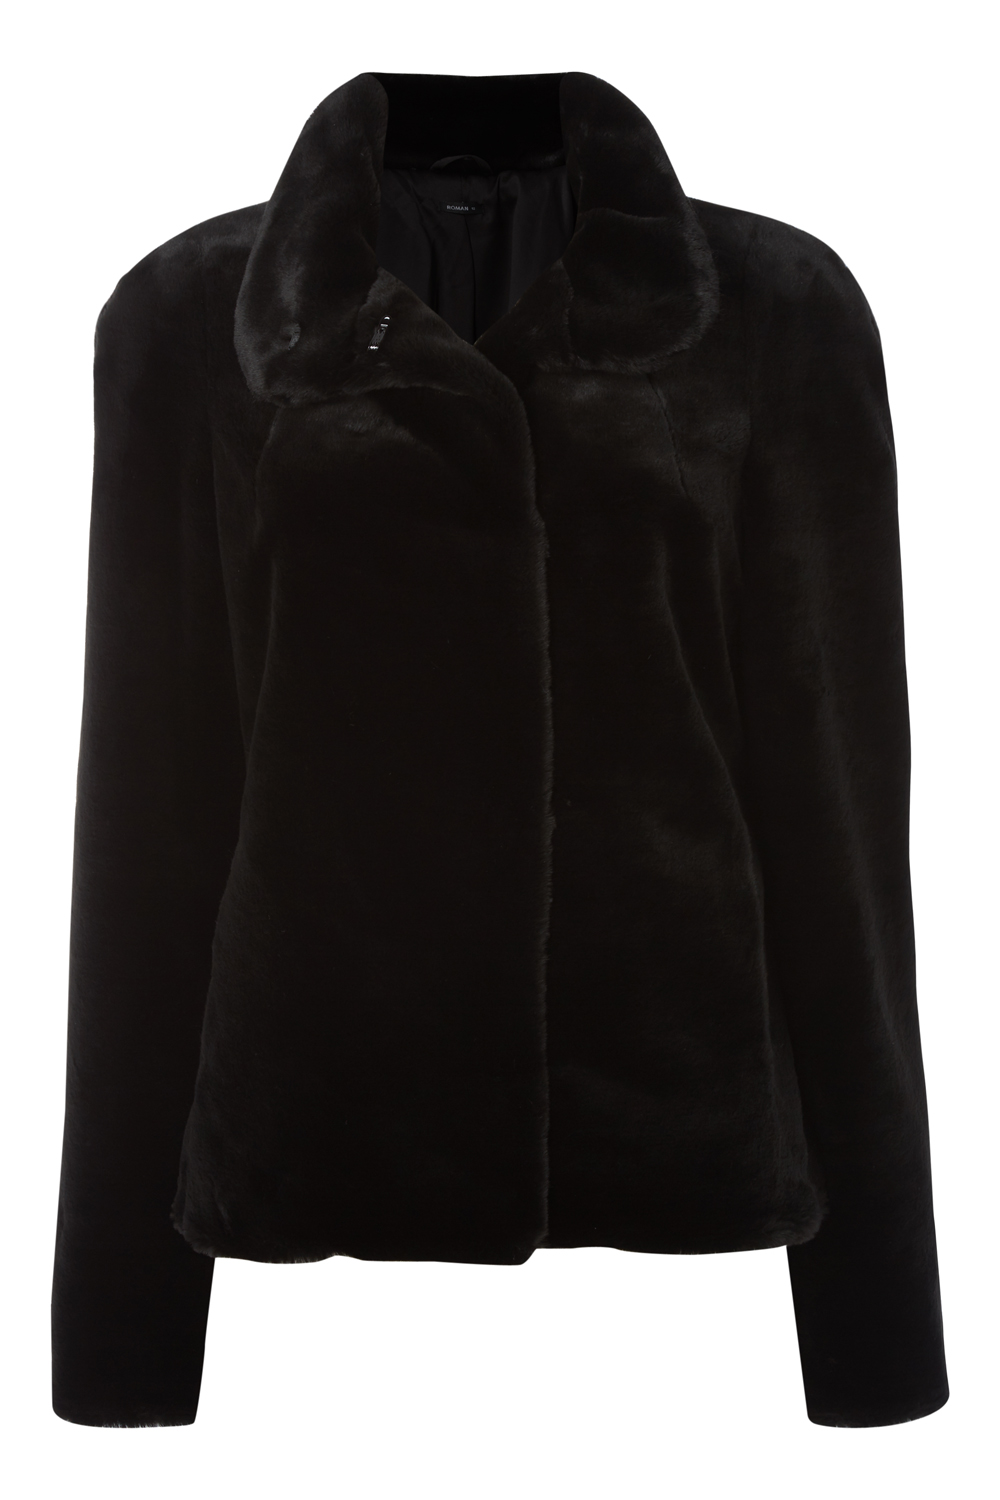 Black Short Faux Fur Jacket, Image 4 of 4